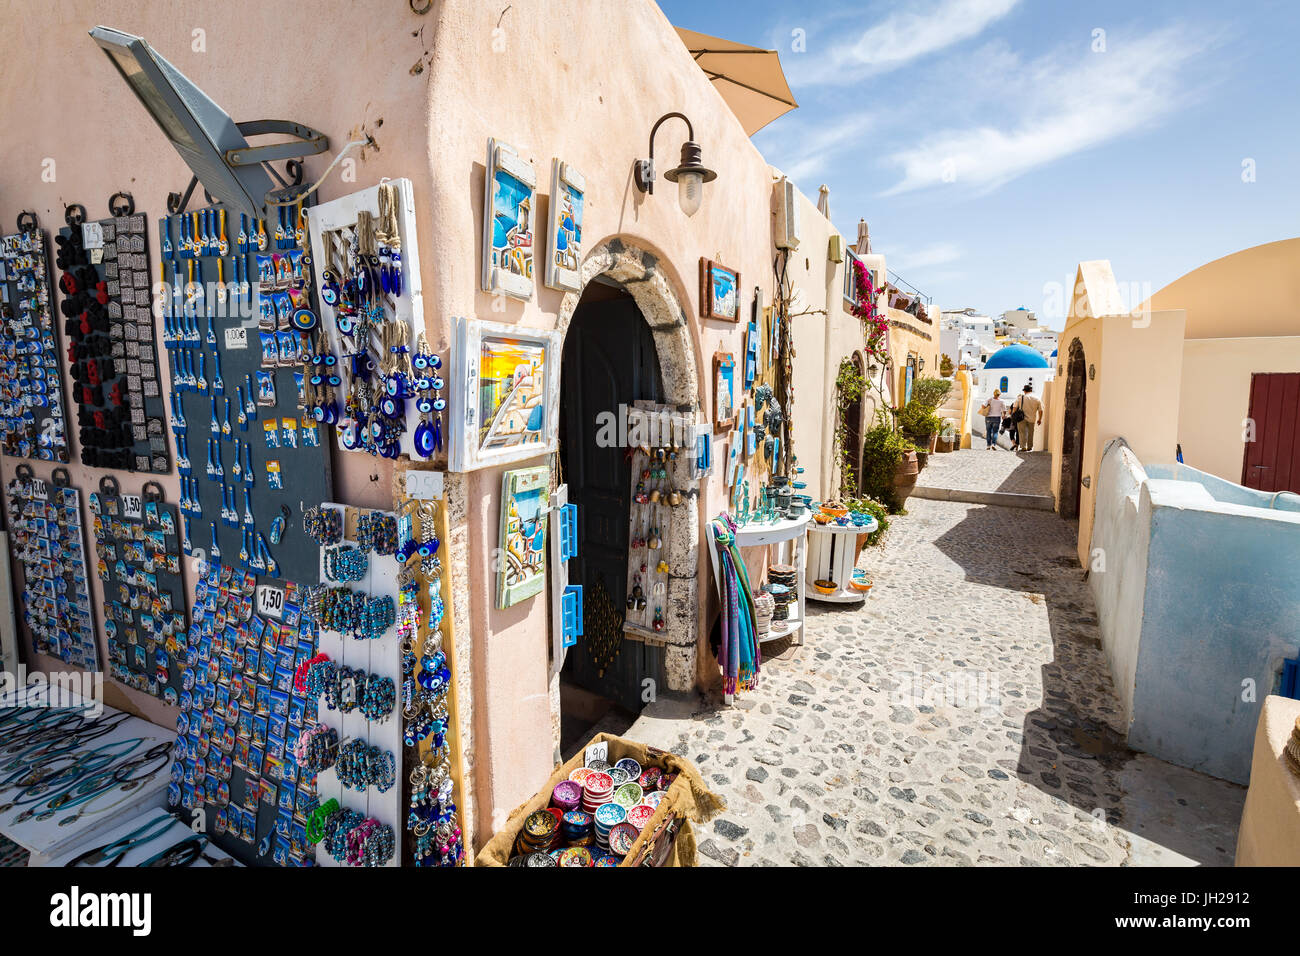 Tiendas de souvenirs que venden fotografías, imanes y joyas en Oia, Santorini, Cícladas, Islas Griegas, Grecia, Europa Foto de stock